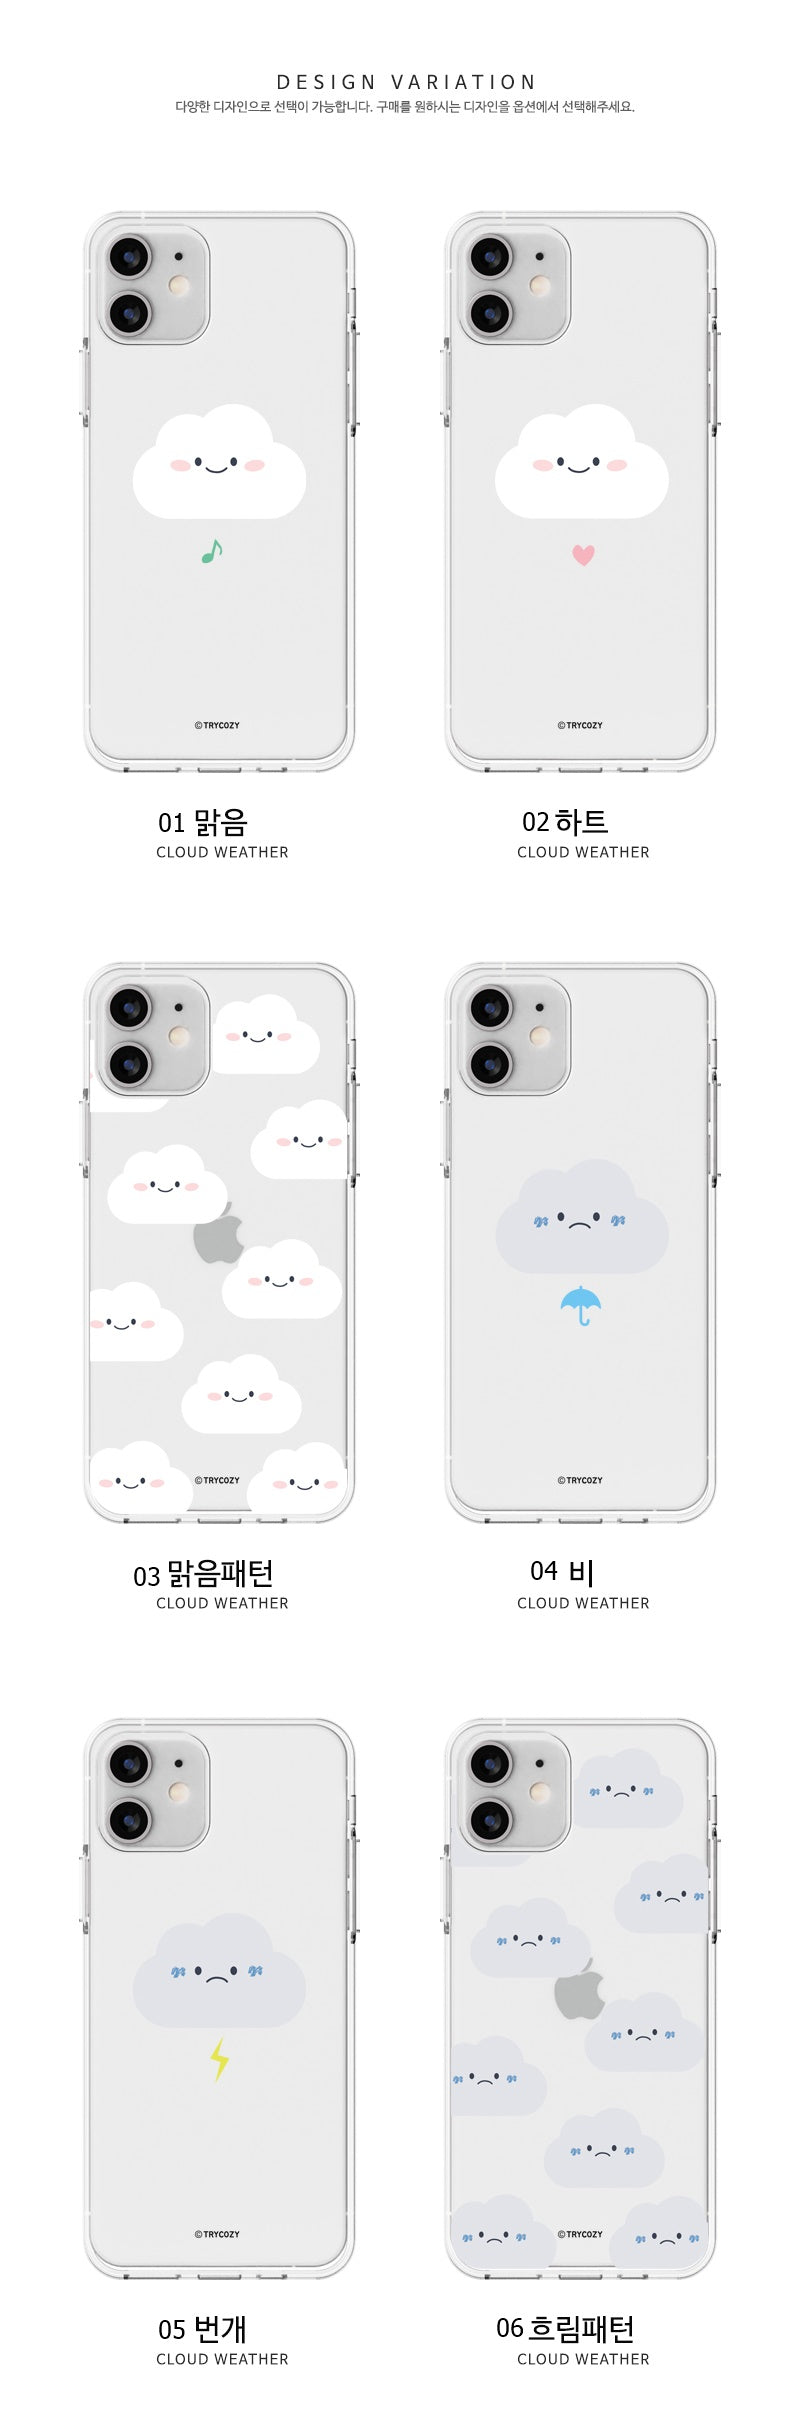 韓國直送 | J03 雲仔 - 透明手機軟殼 iPhone / Samsung Galaxy 系列